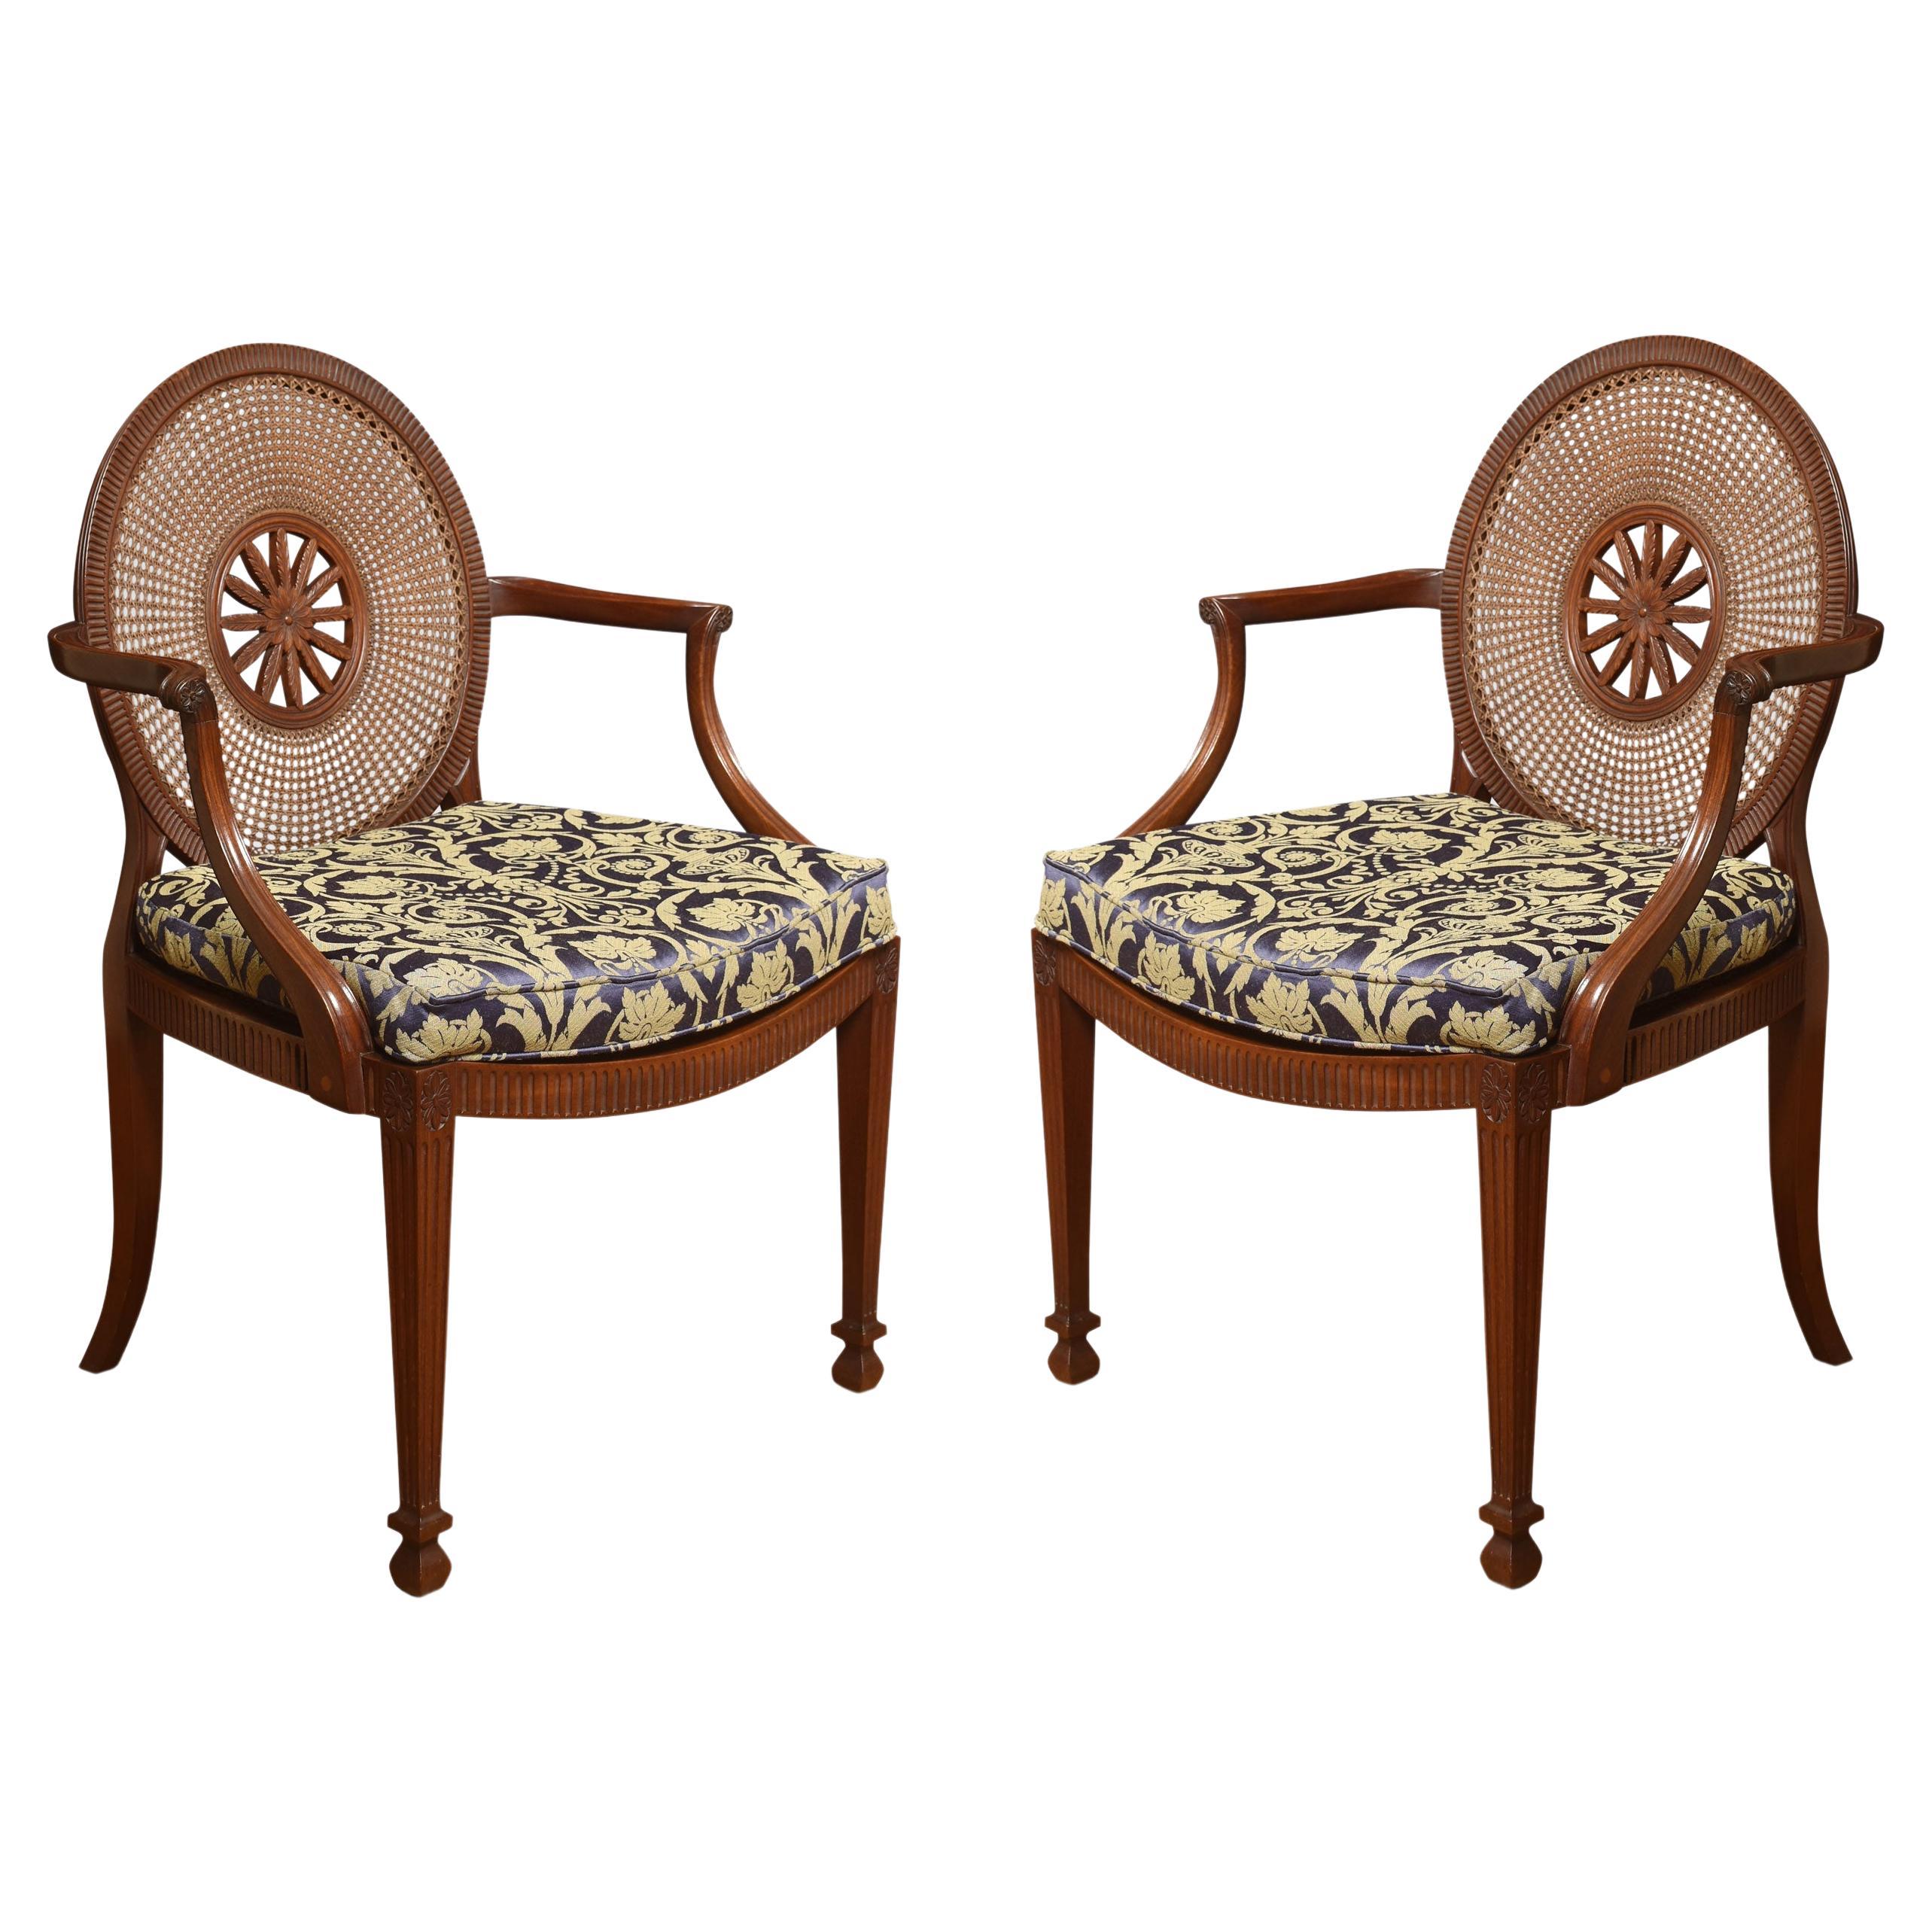 Pair of mahogany framed armchairs